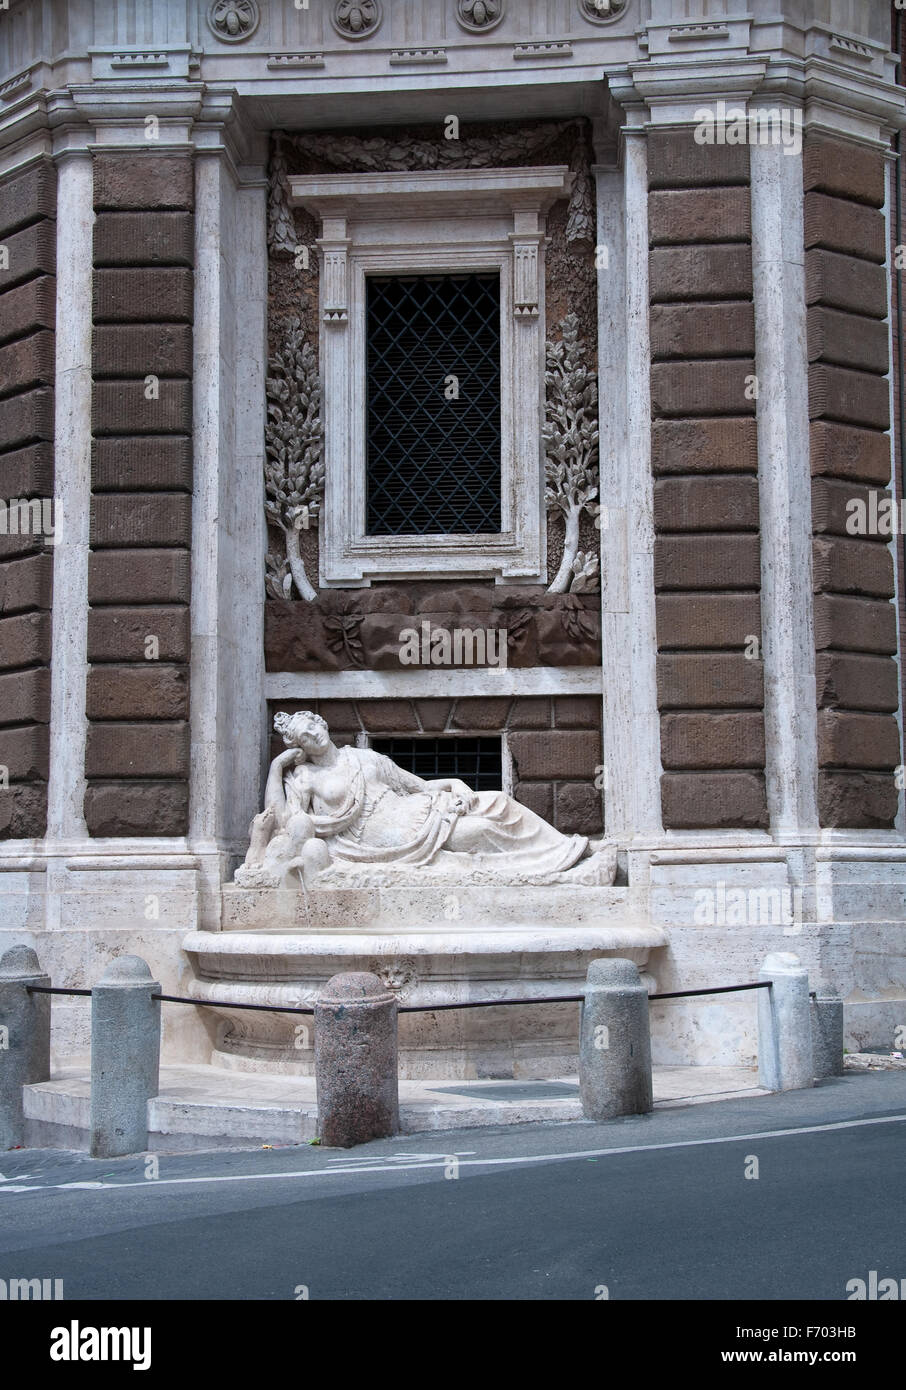 Via delle Quattro Fontane in Rome, Italy Stock Photo